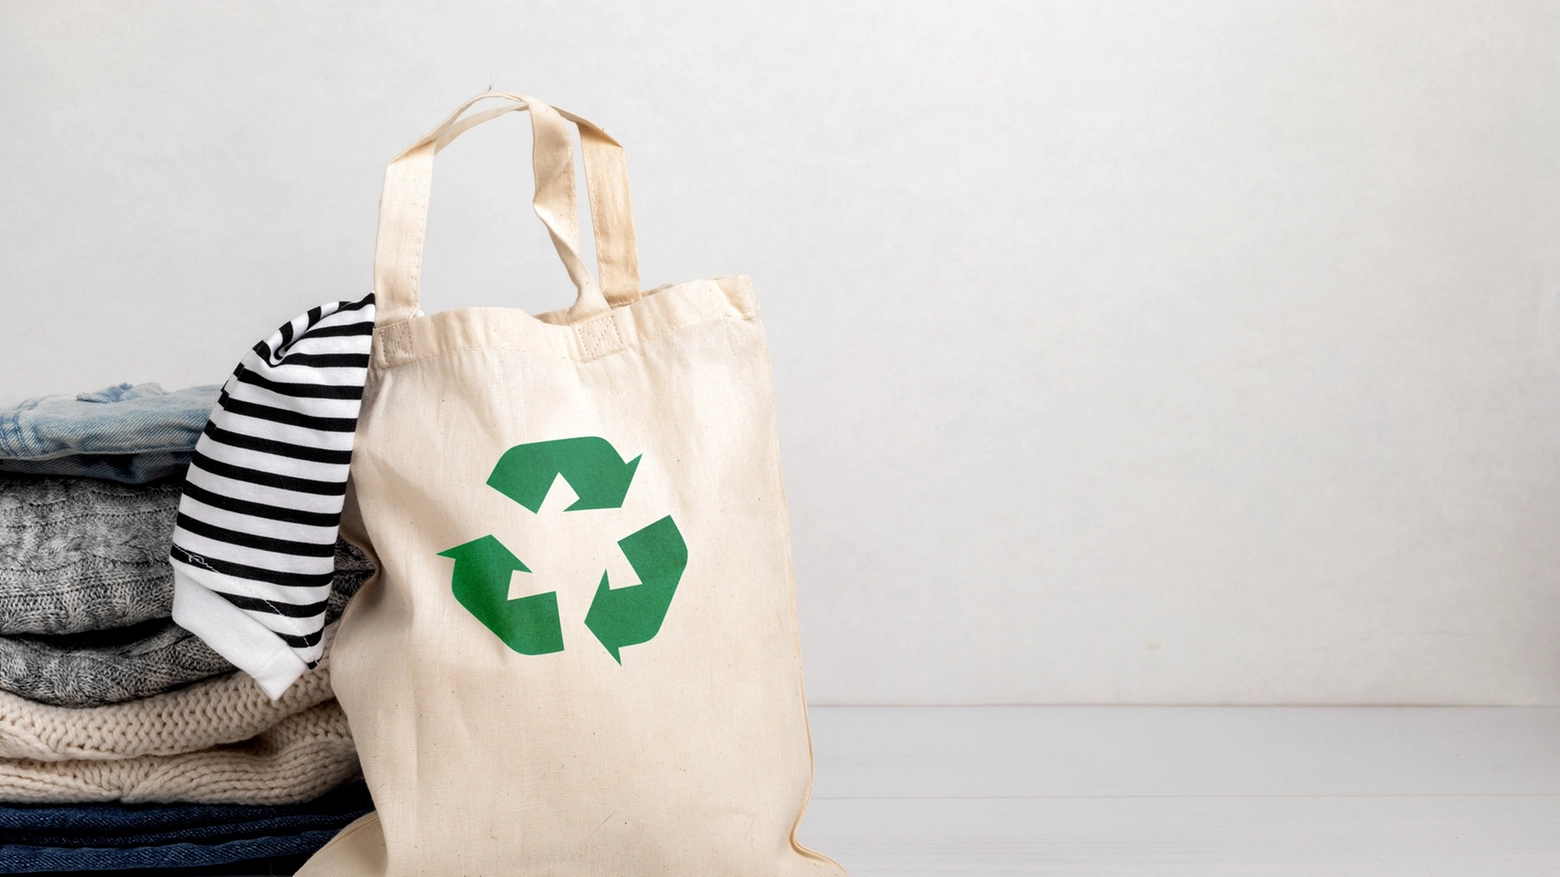 Obiettivi / Convincere a non comprare, bensì a riciclare è lo scopo